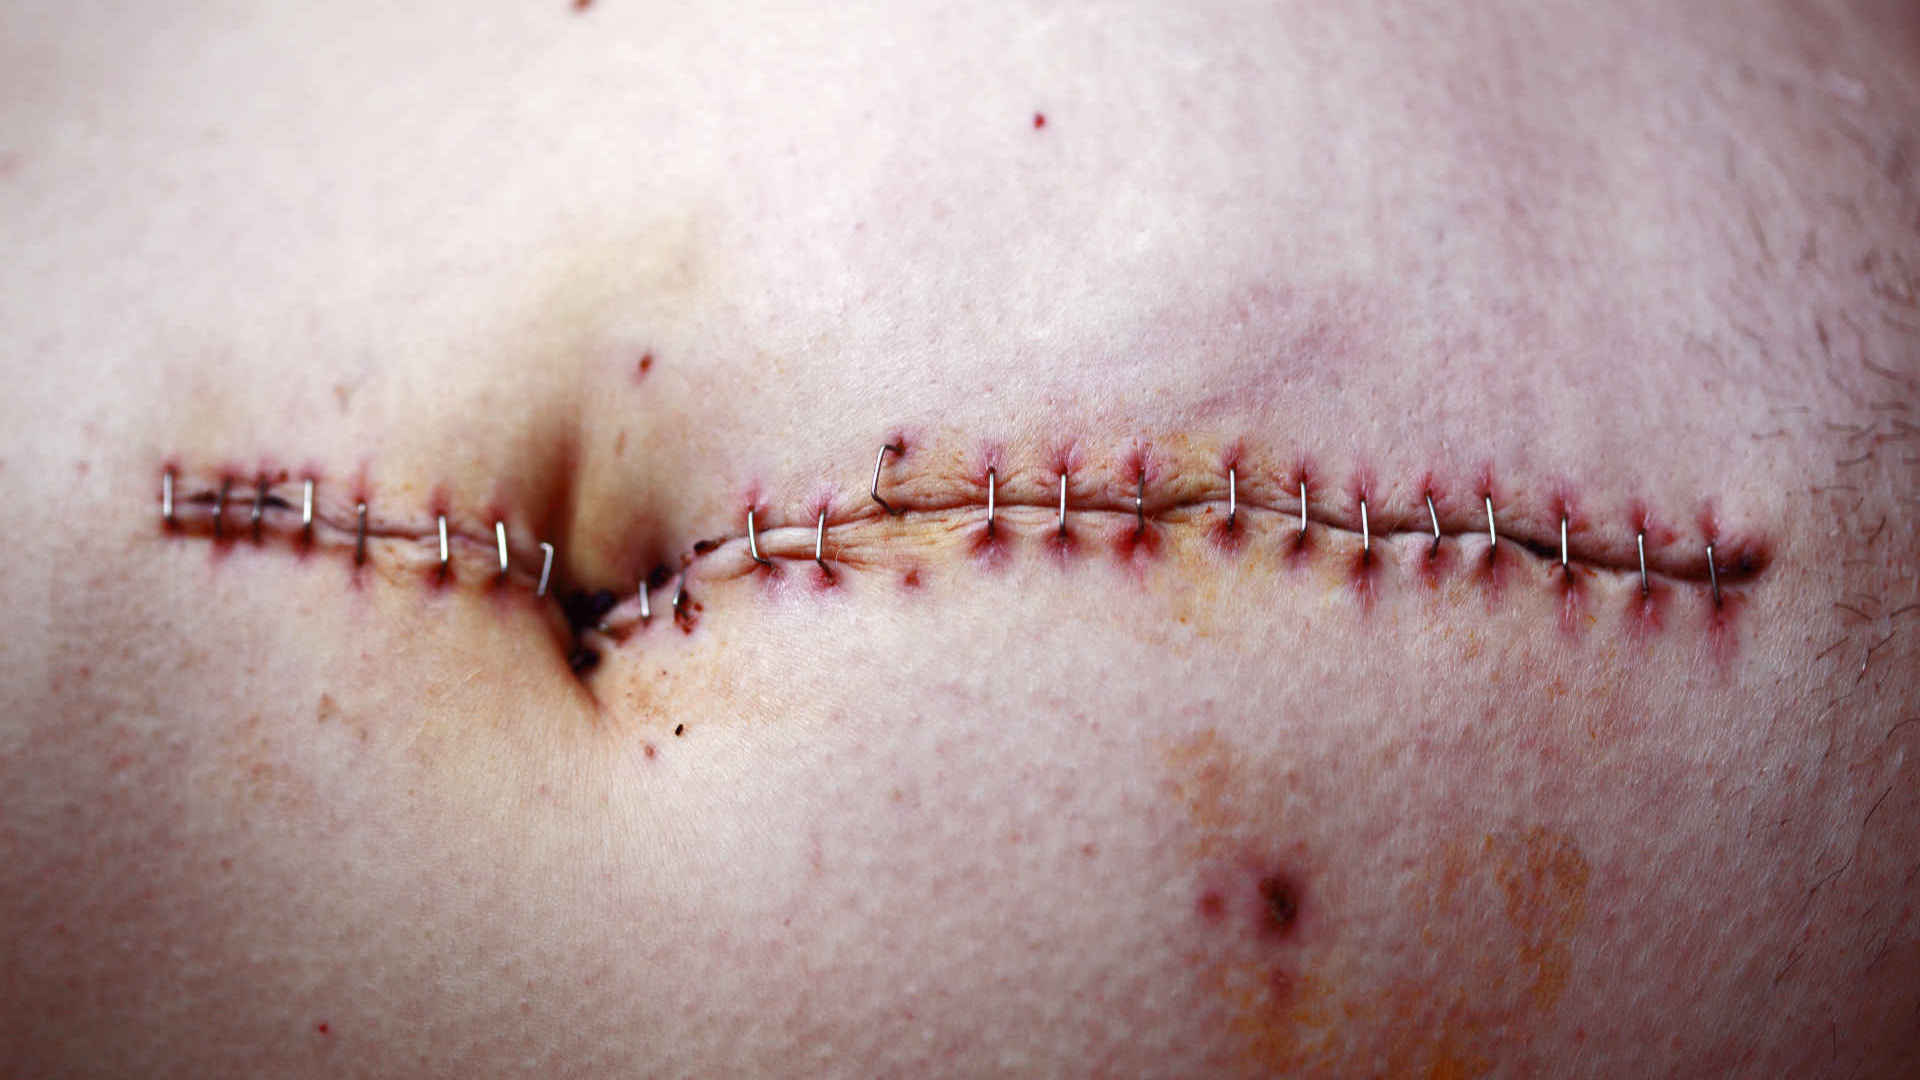 Laparotomy wound